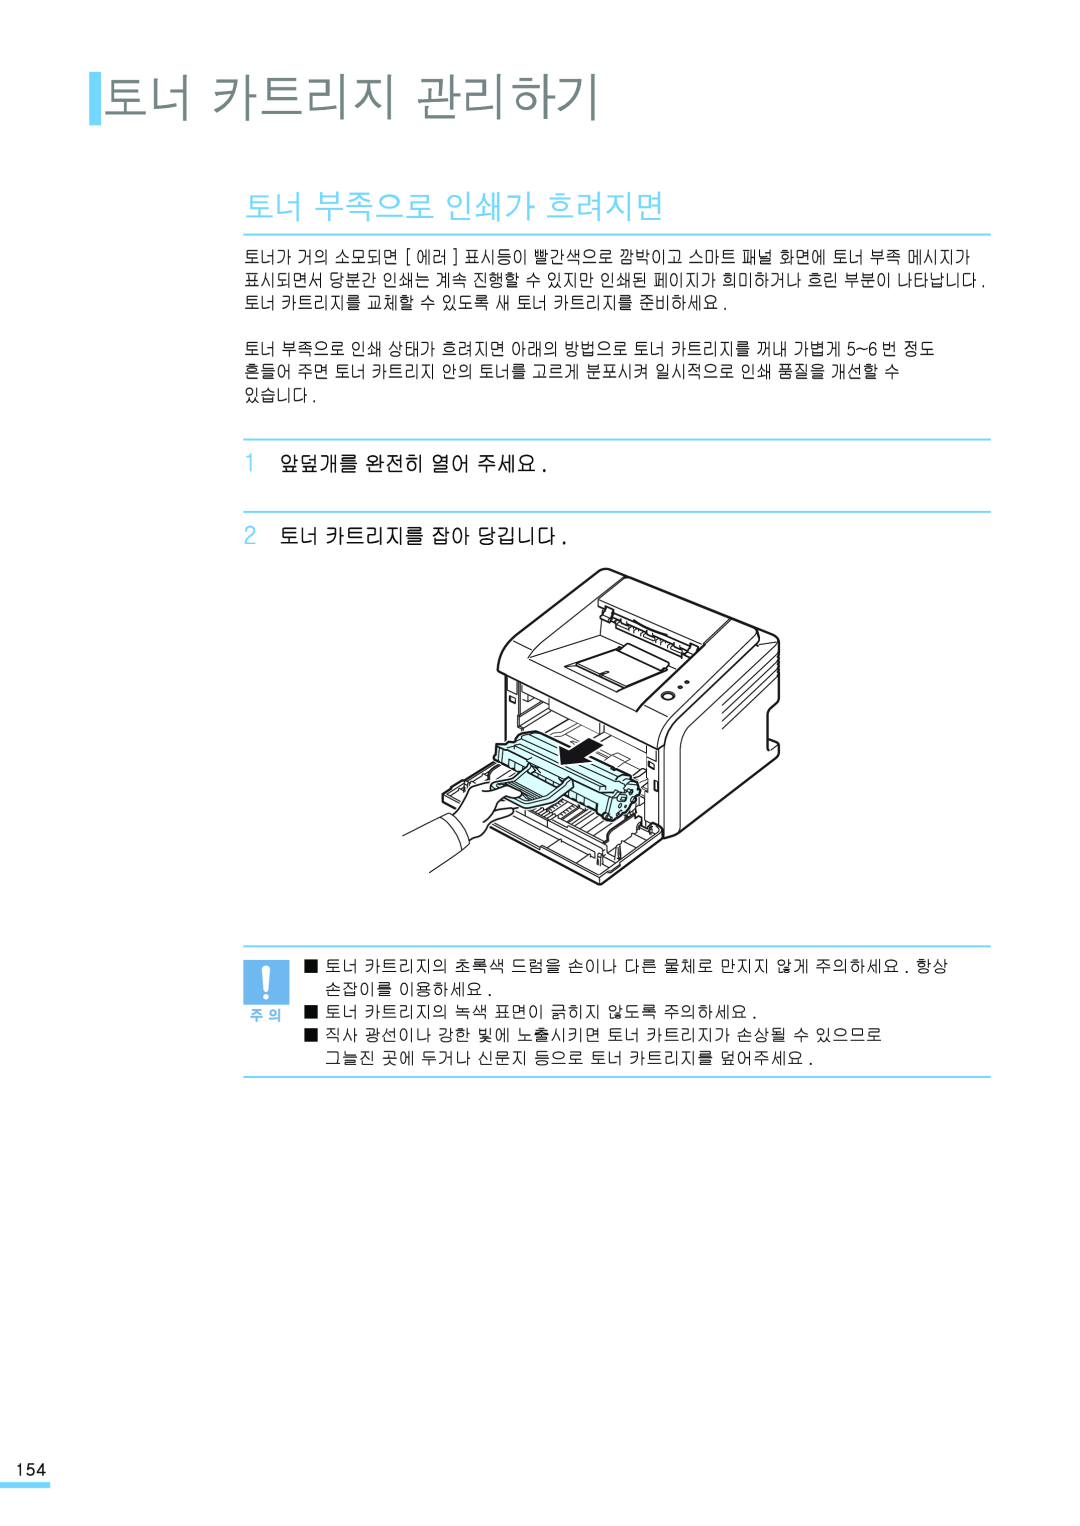 Samsung ML-2571N manual 토너 카트리지 관리하기, 토너 부족으로 인쇄가 흐려지면, 1 앞덮개를 완전히 열어 주세요 2 토너 카트리지를 잡아 당깁니다 